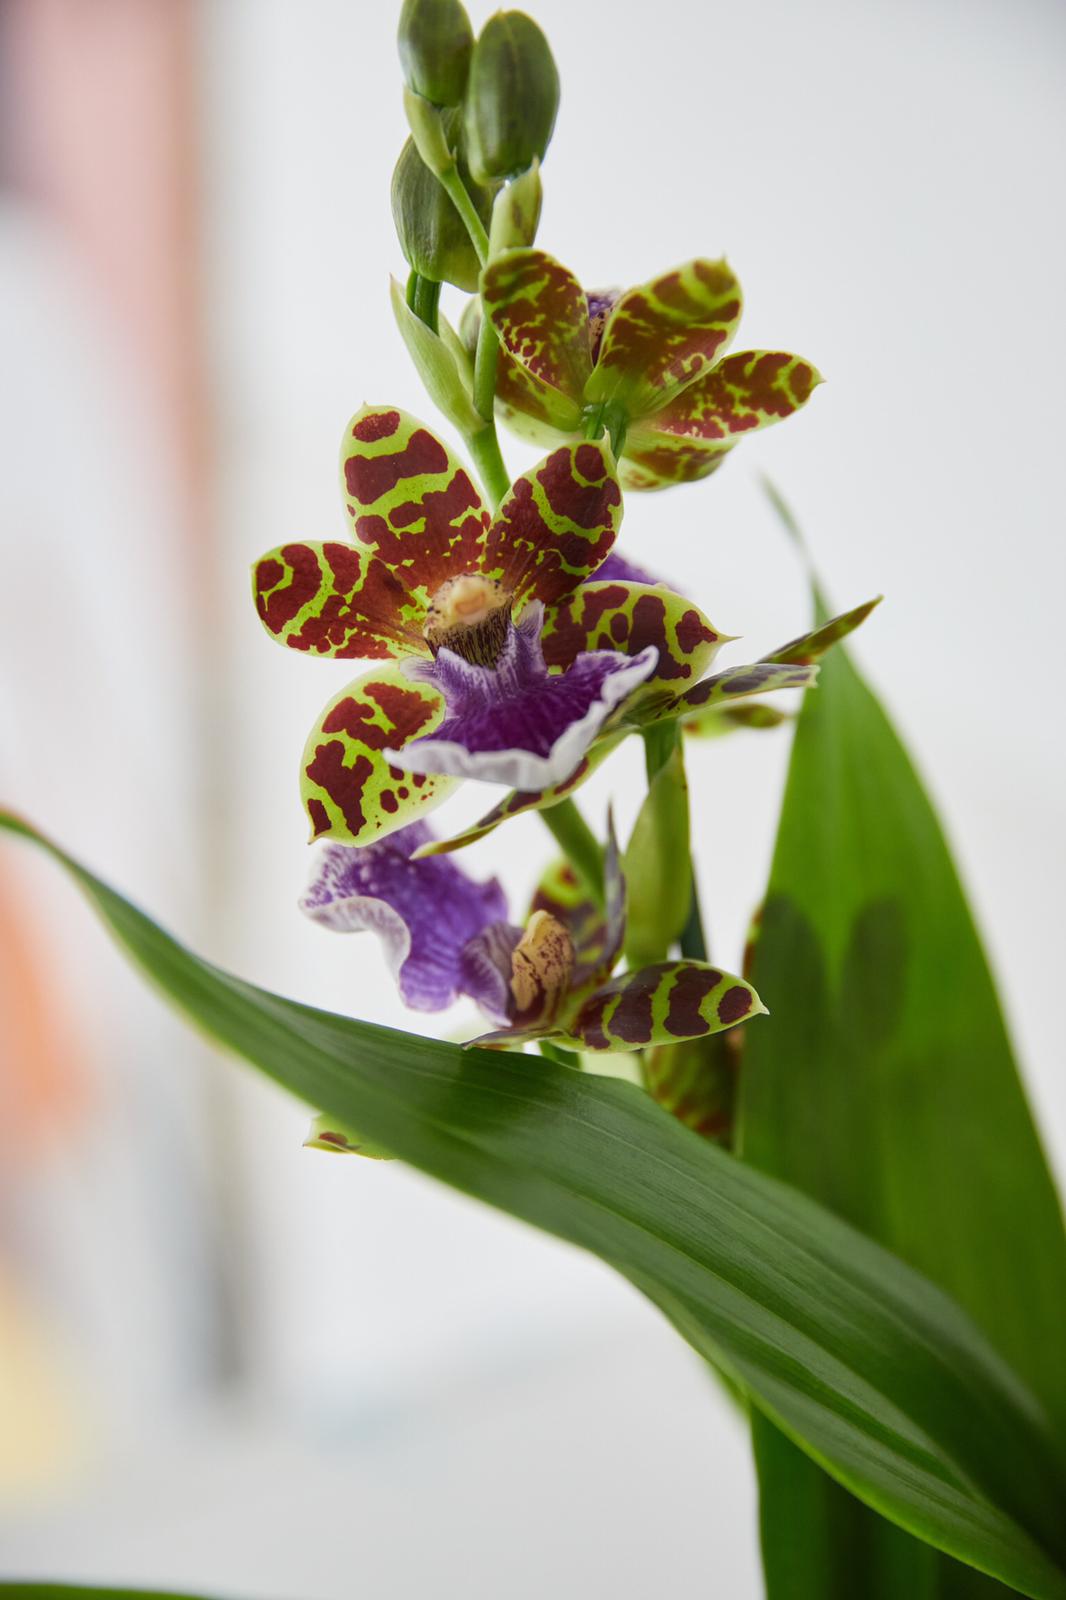 L'orchidée Zygopetalum - orchidée du mois